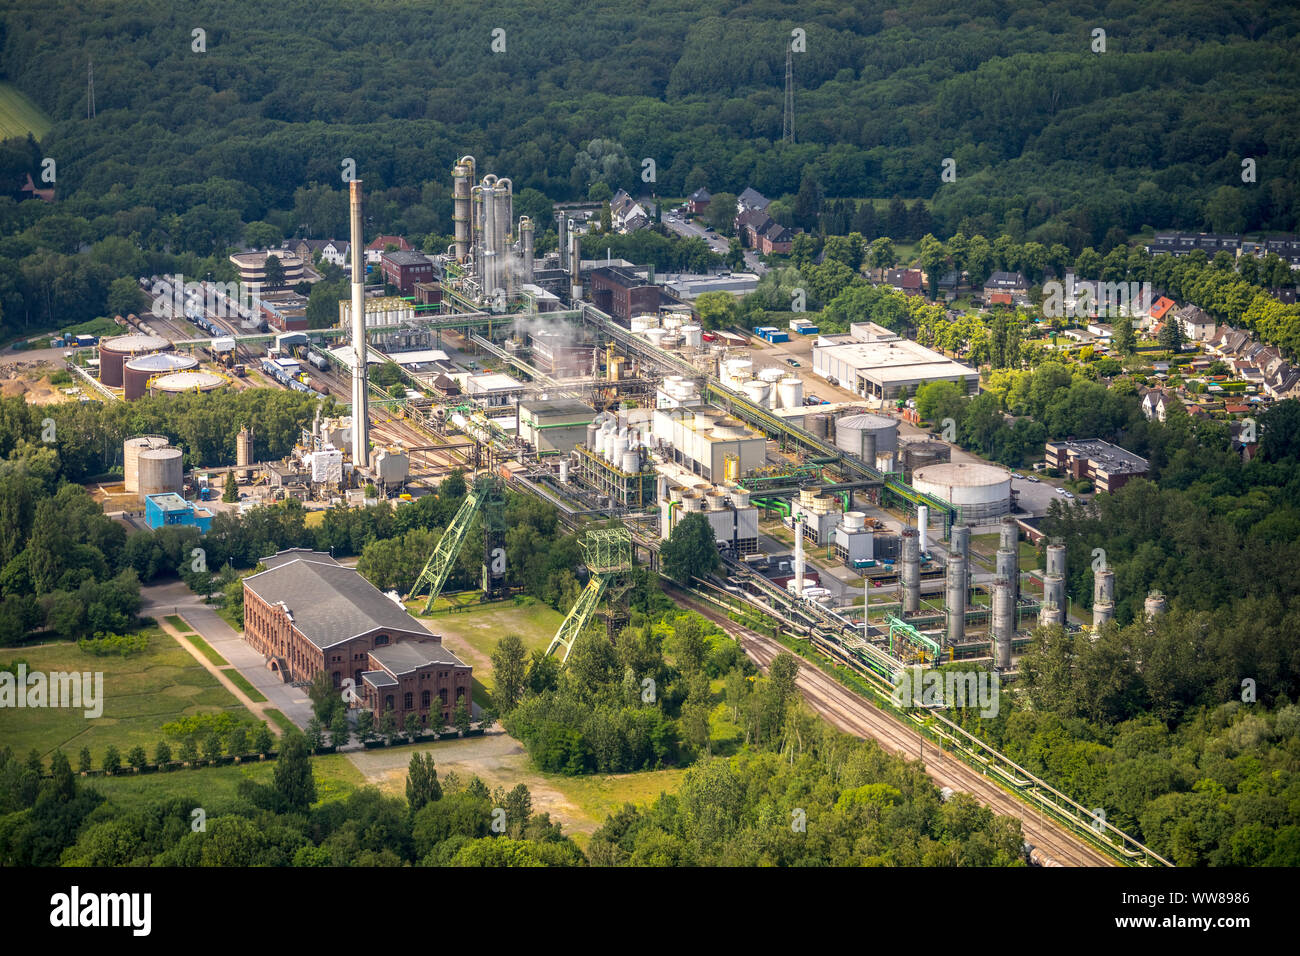 Vue aérienne, de la salle de machinerie historique Zweckel, venue, à côté de l'usine chimique Ineos Phenol, headframes Schacht 1  + 2 Zweckel Mine, Gladbeck, Ruhr, Rhénanie du Nord-Westphalie, Allemagne Banque D'Images